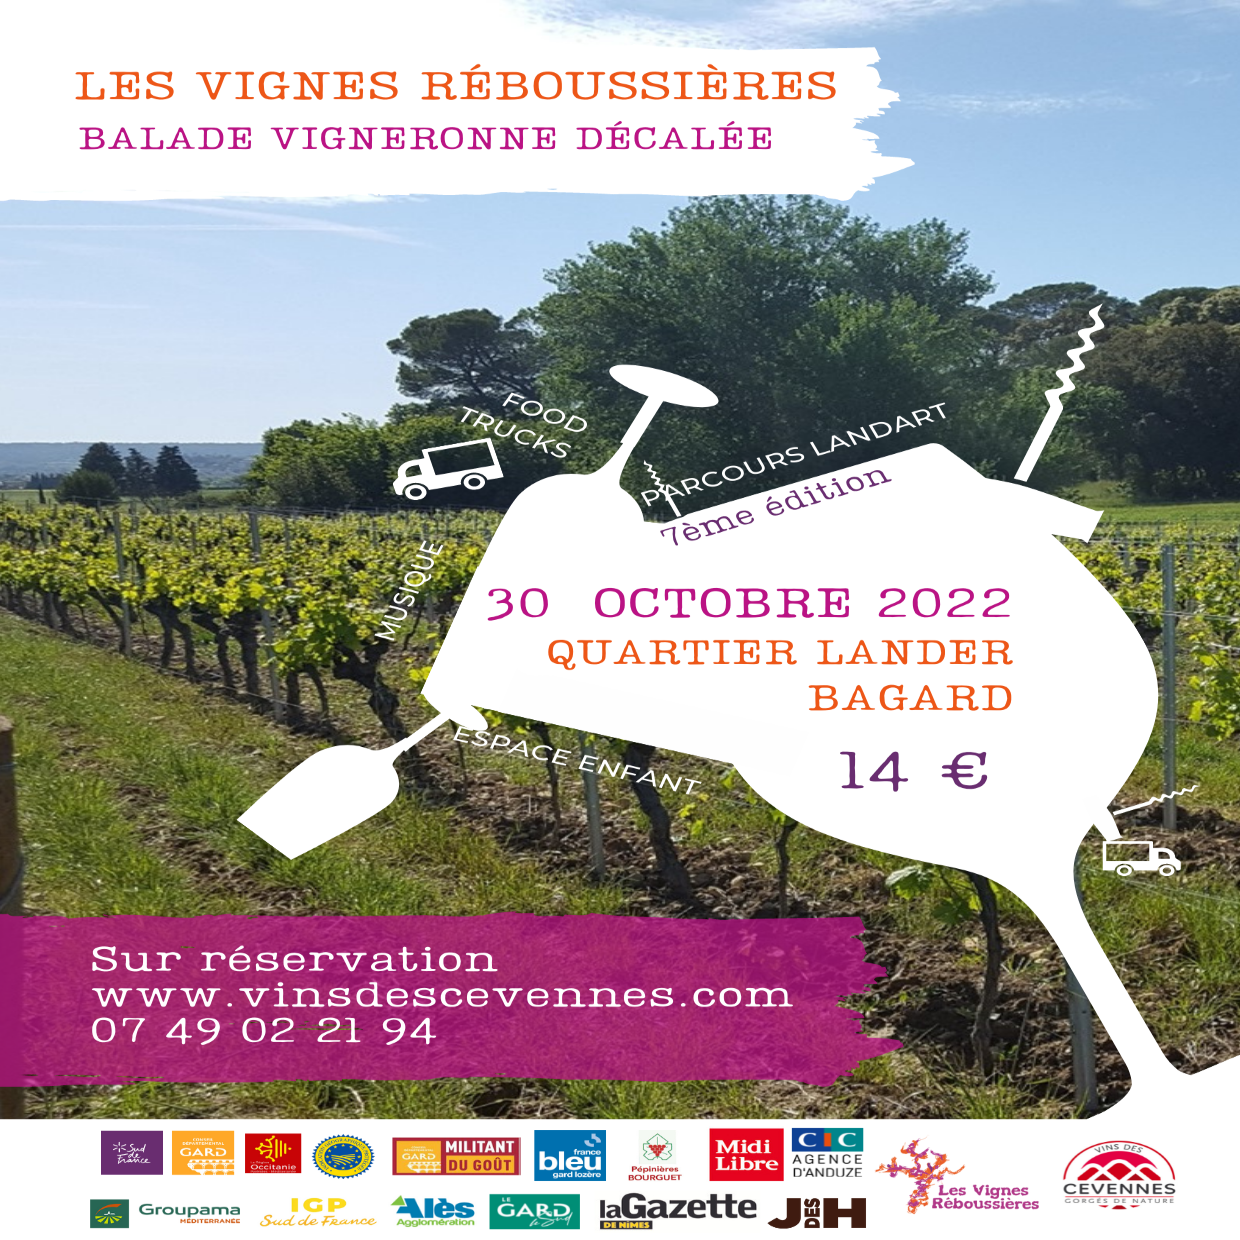 Les Vignes Réboussières : Balade vigneronne festive et décalée pour découvrir les vins IGP Cévennes